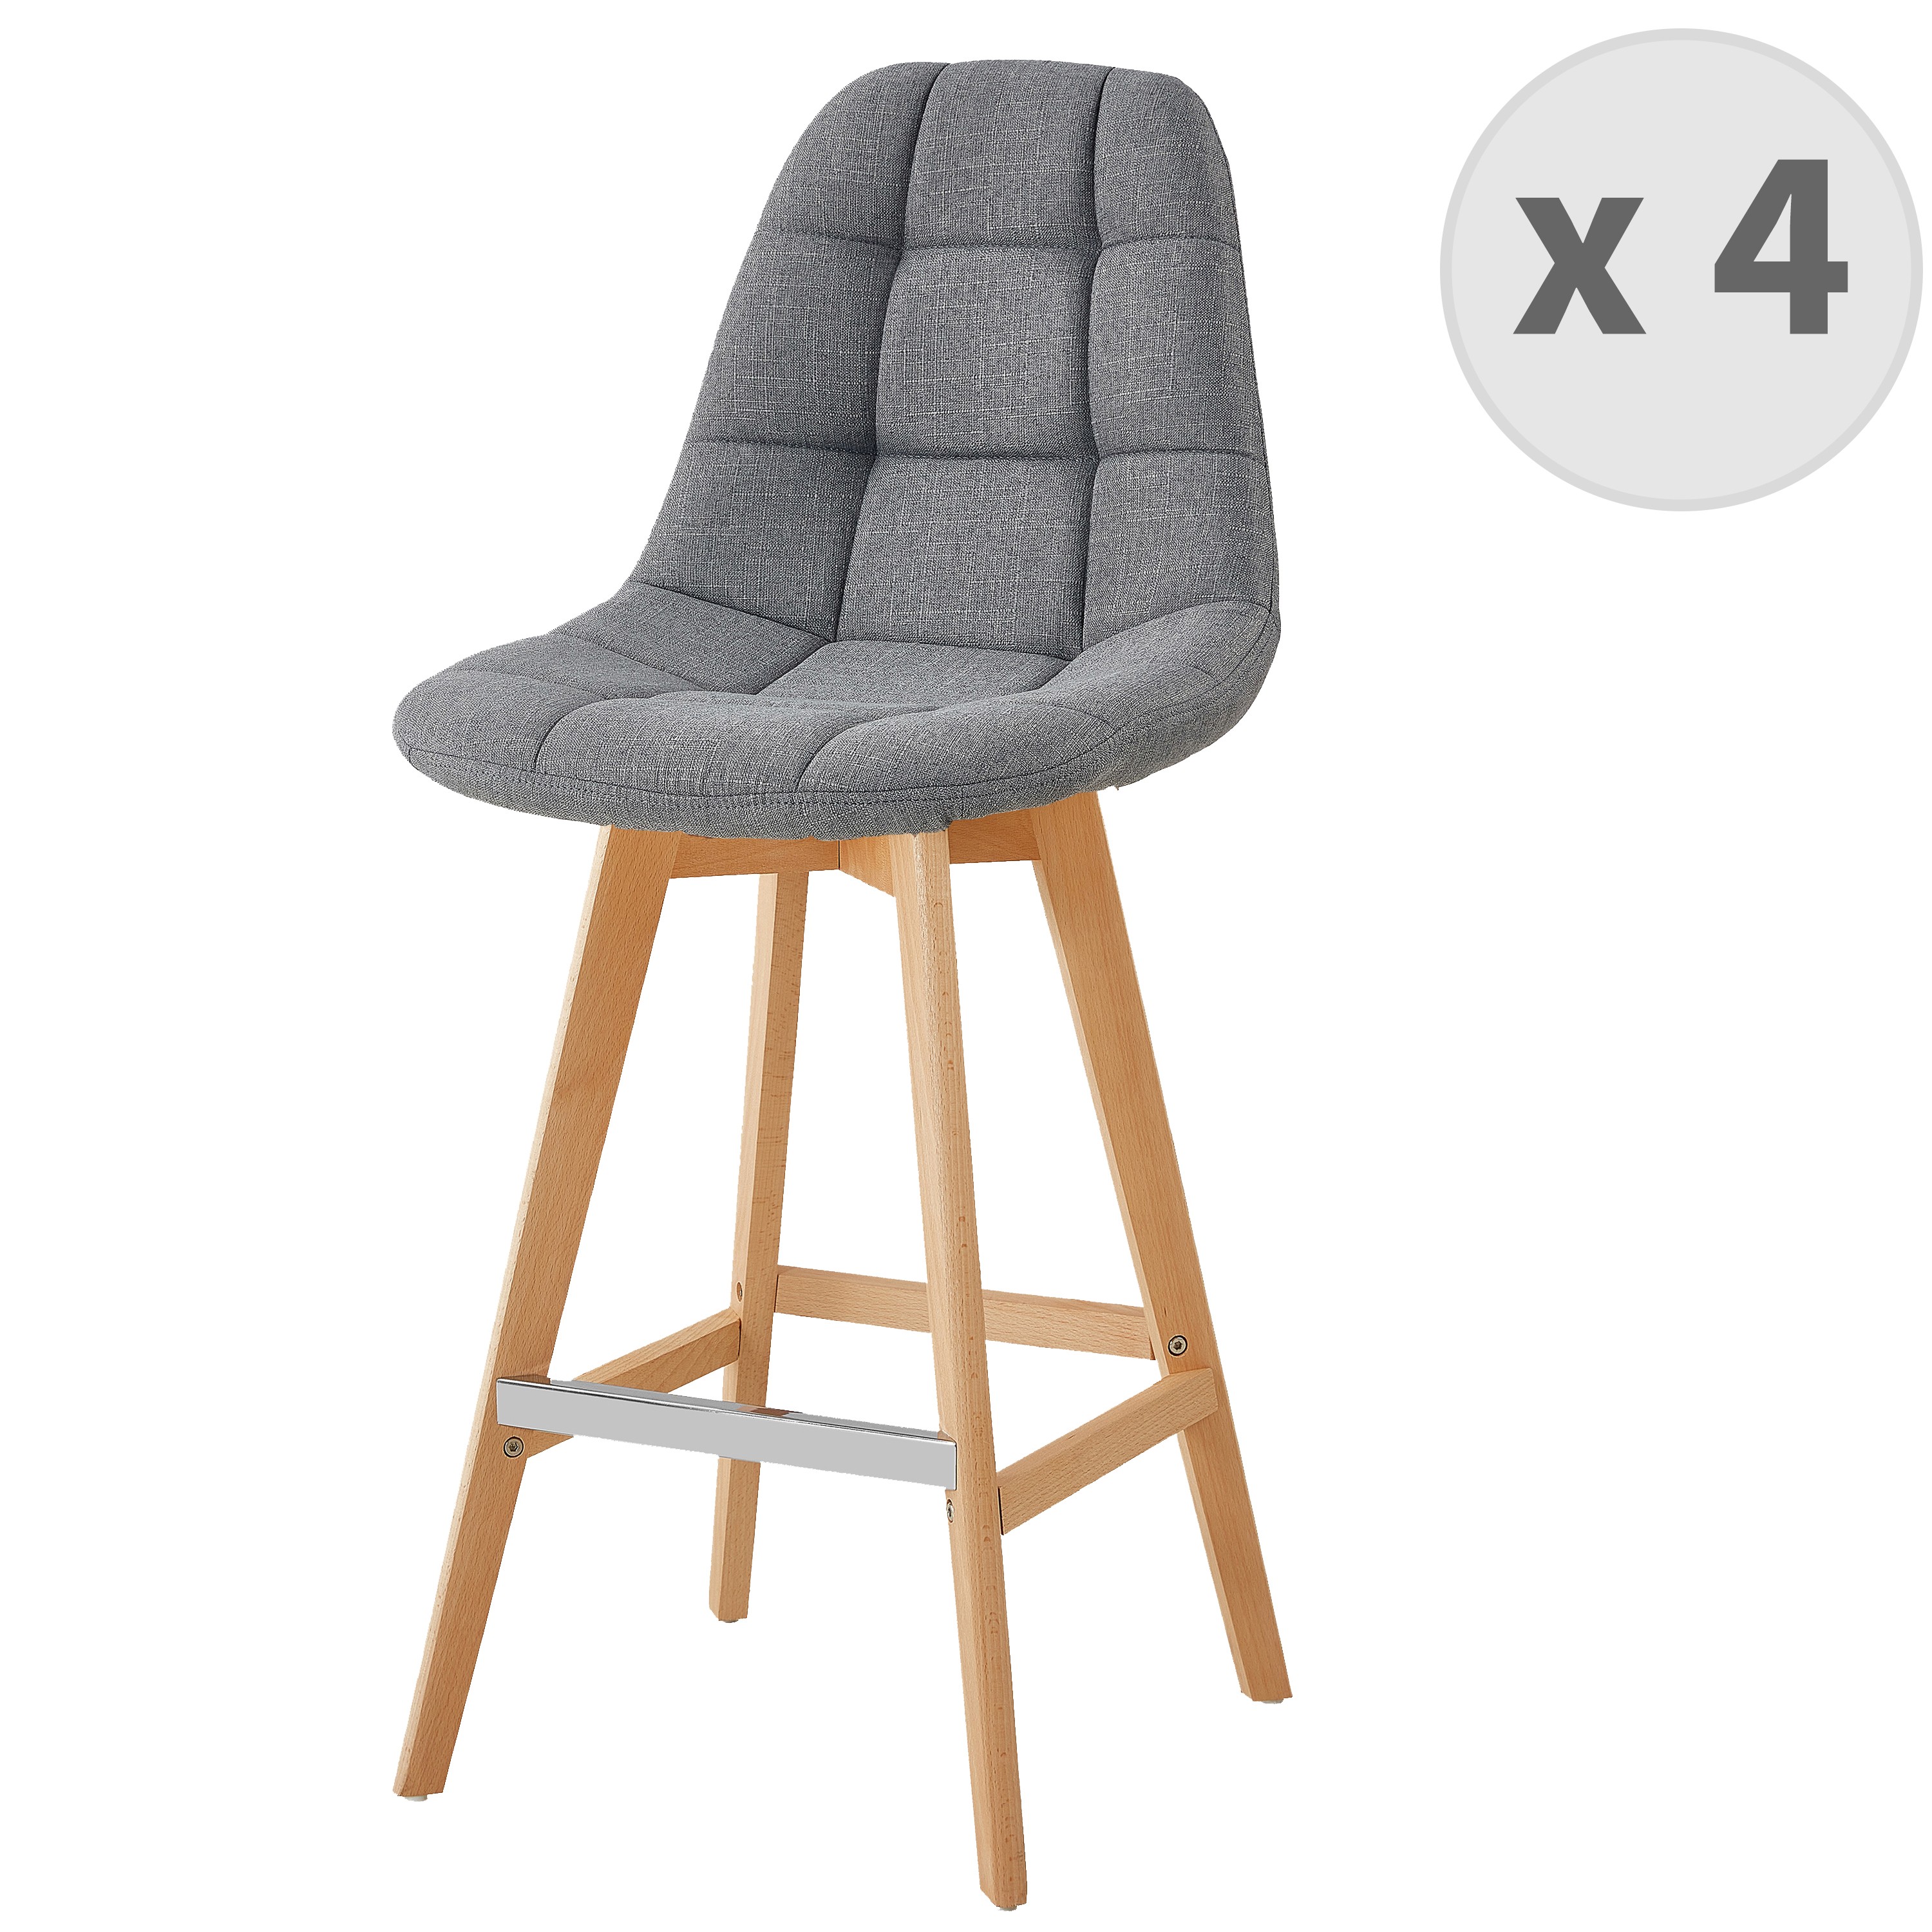 OWEN - Chaise de bar scandinave tissu Gris pied hêtre (x4)